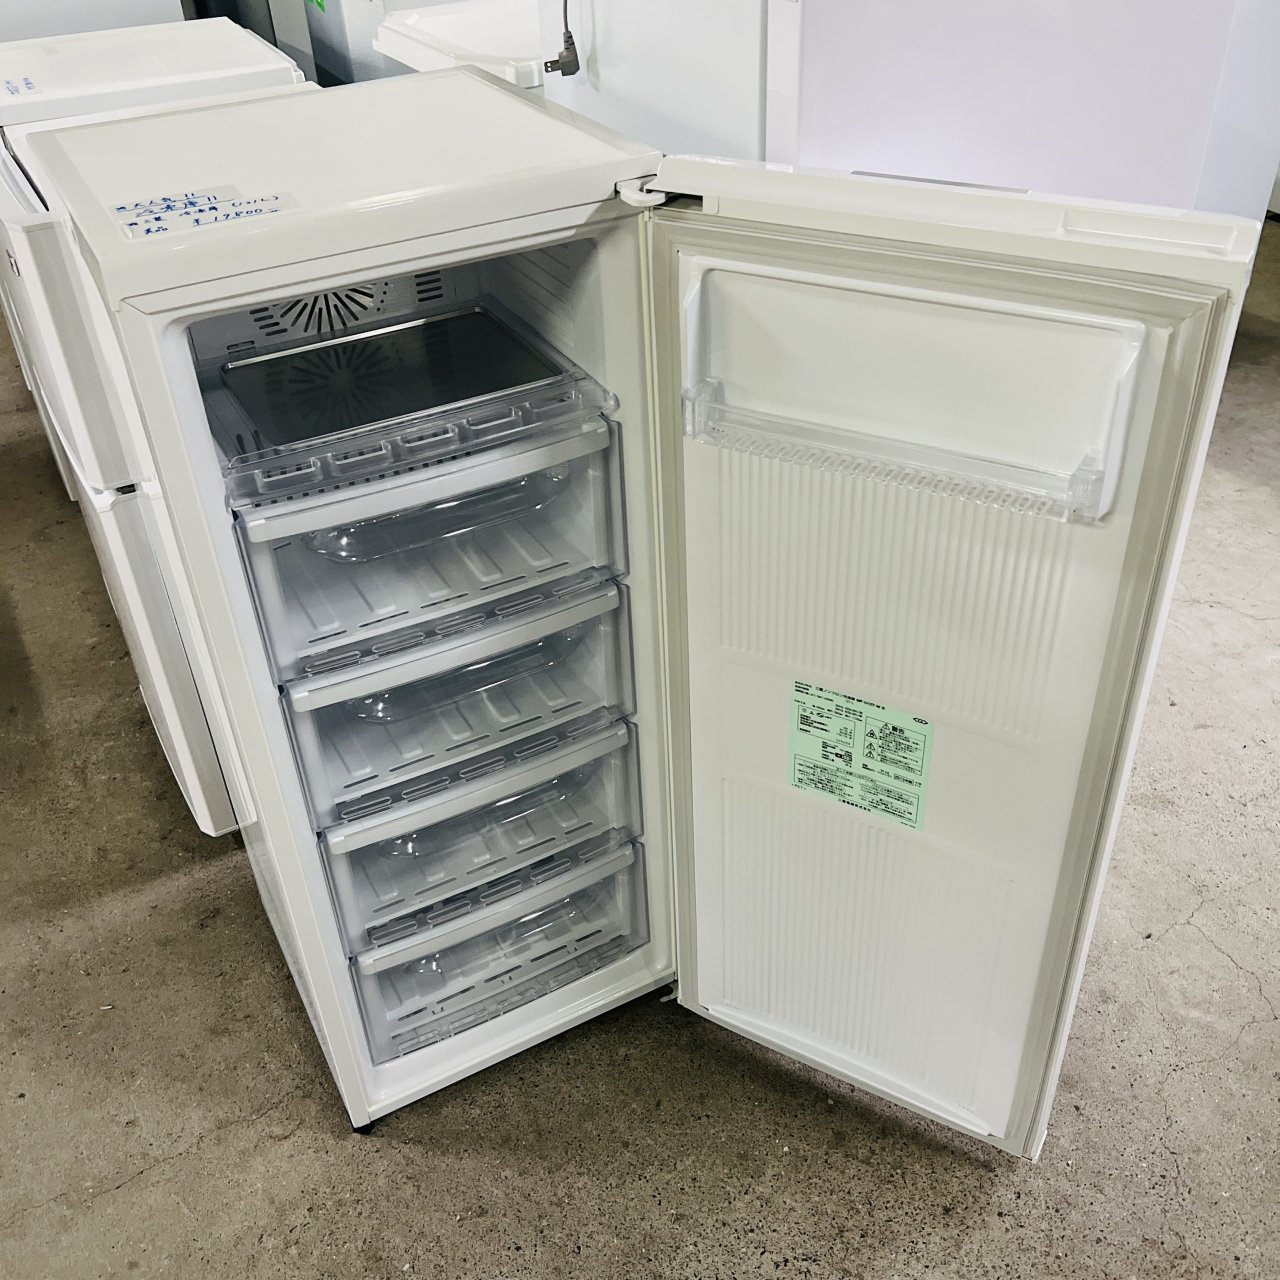 MITSUBISHI / 三菱 300L 冷蔵庫 2013年 MR-D30W - キッチン家電